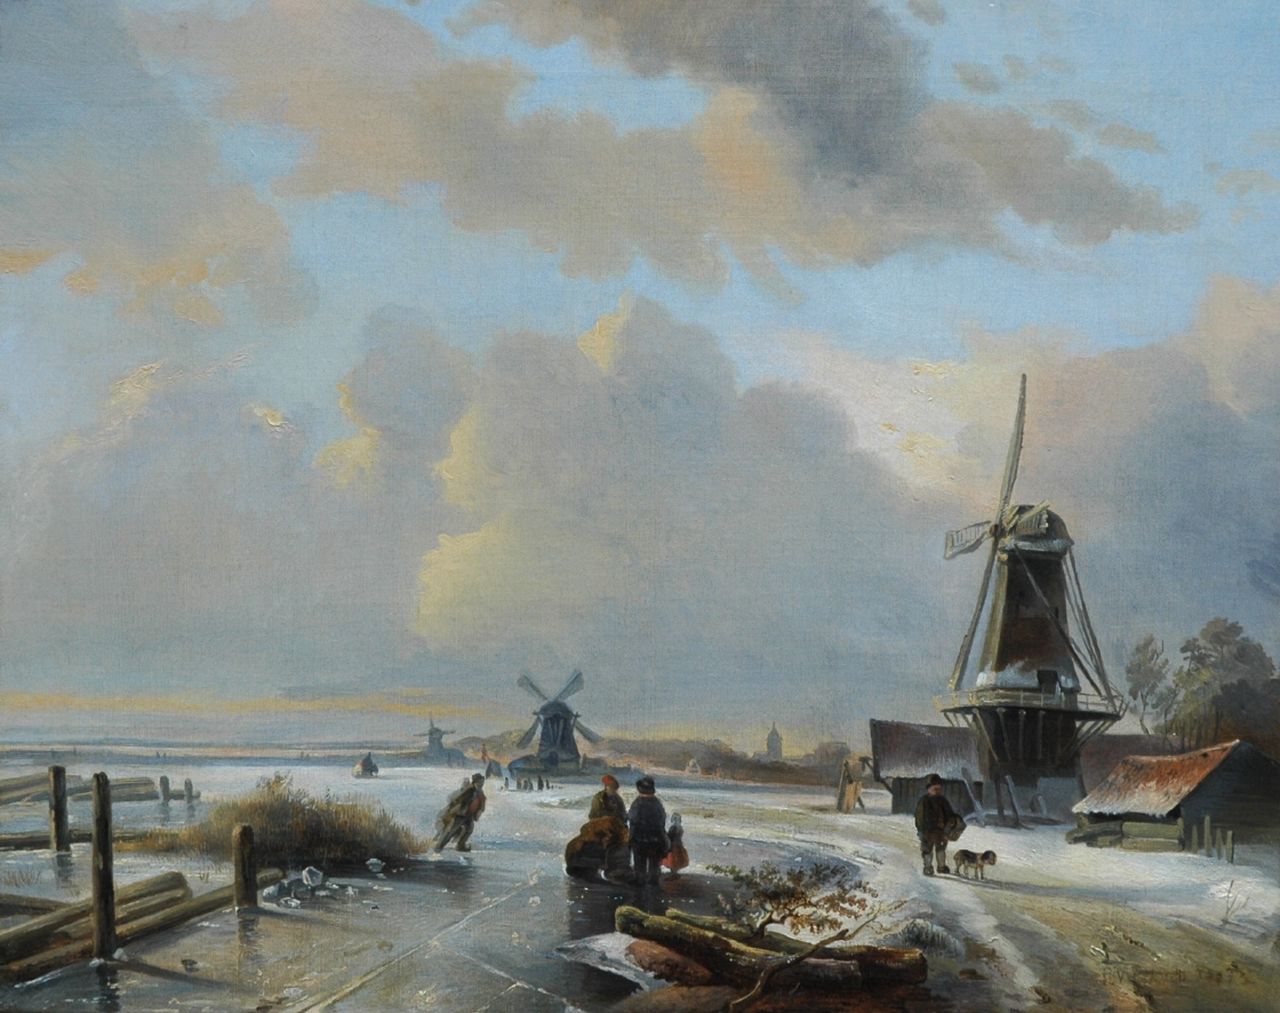 Pieter Voskuil | Winterlandschap met schaatsers op een bevroren rivier, olieverf op doek, 39,1 x 48,8 cm, gesigneerd r.o. en gedateerd 1837